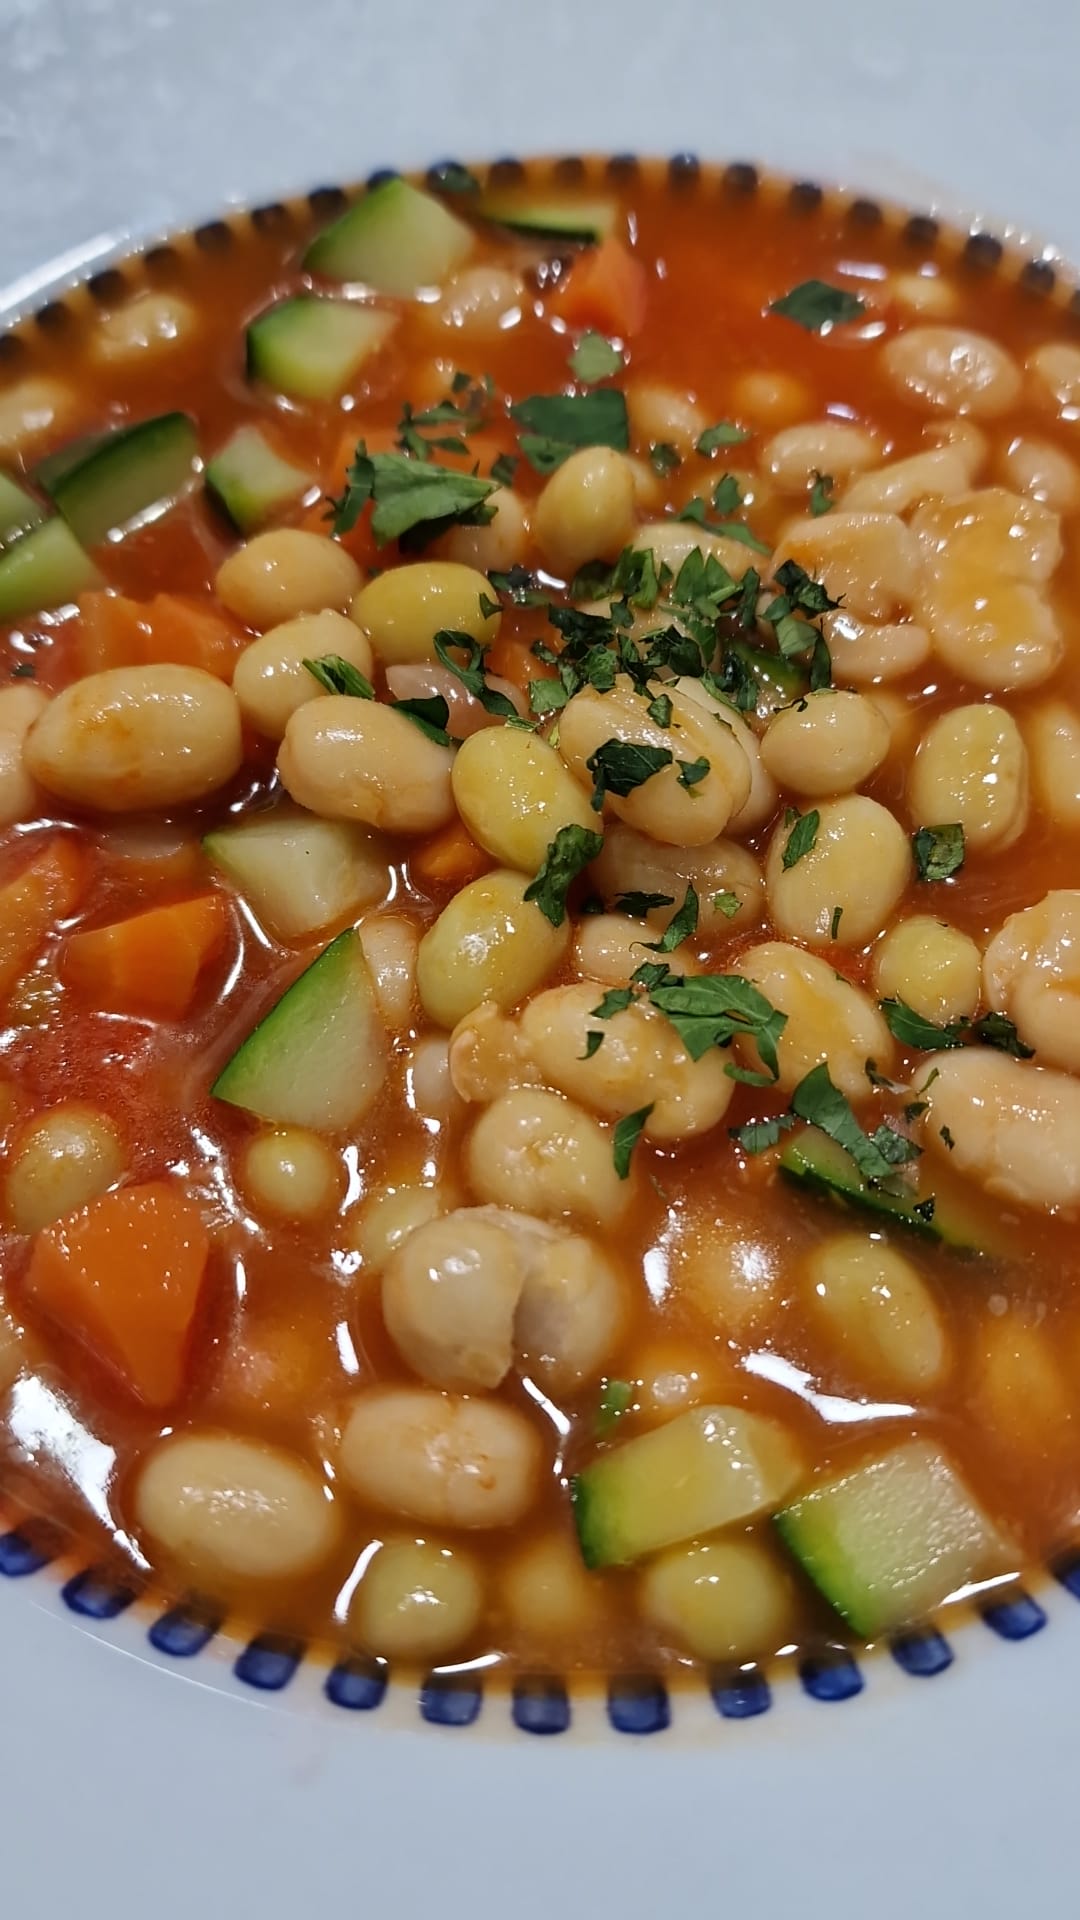 당근과 호박을 곁들인 구운 콩